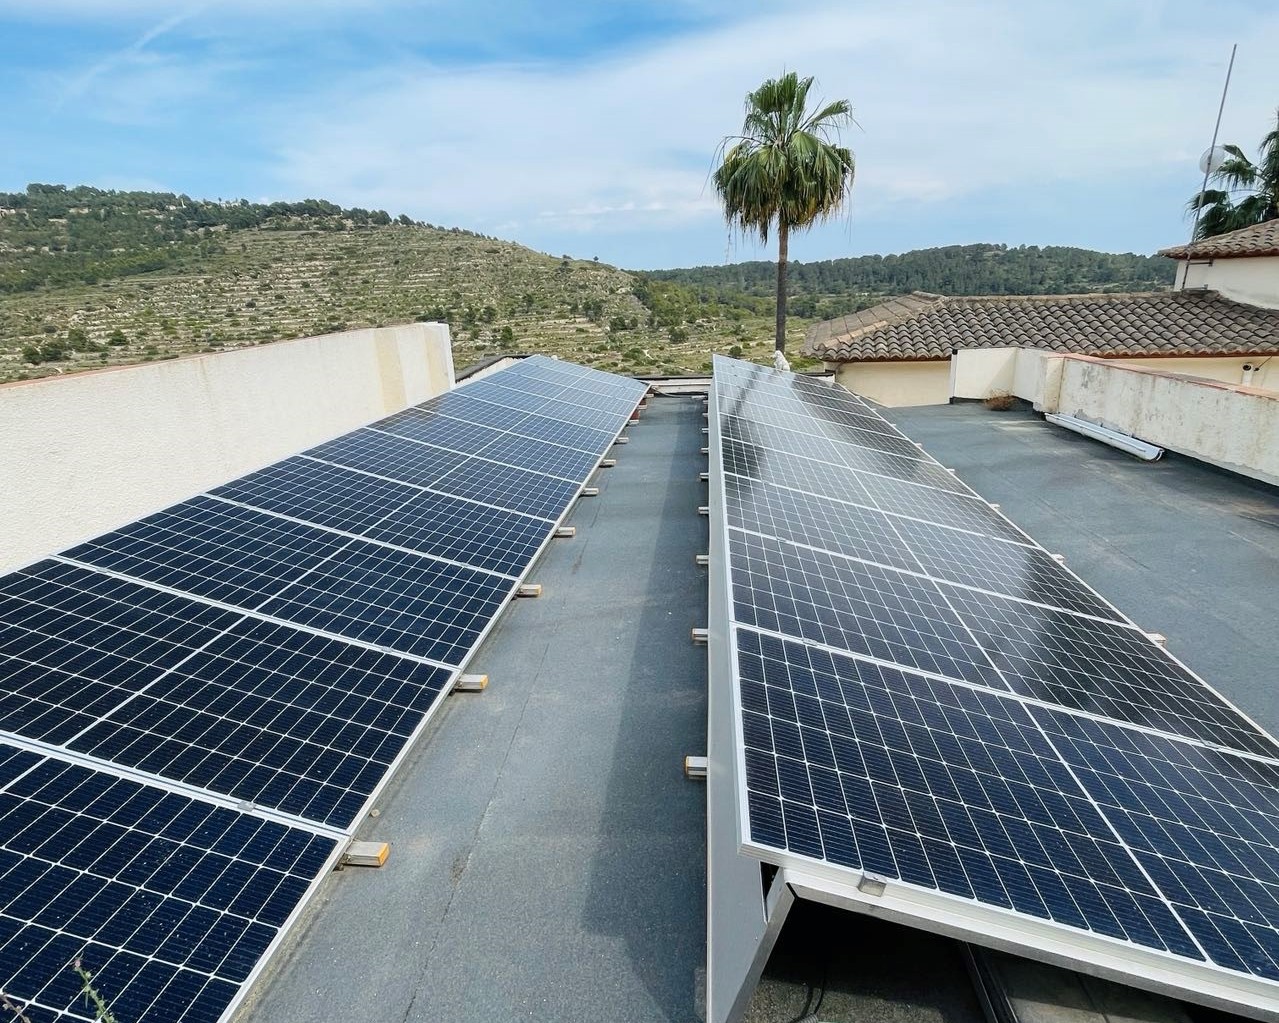 21X 455 wp Paneles Solares, Calpe, Alicante (Sistema híbrido)